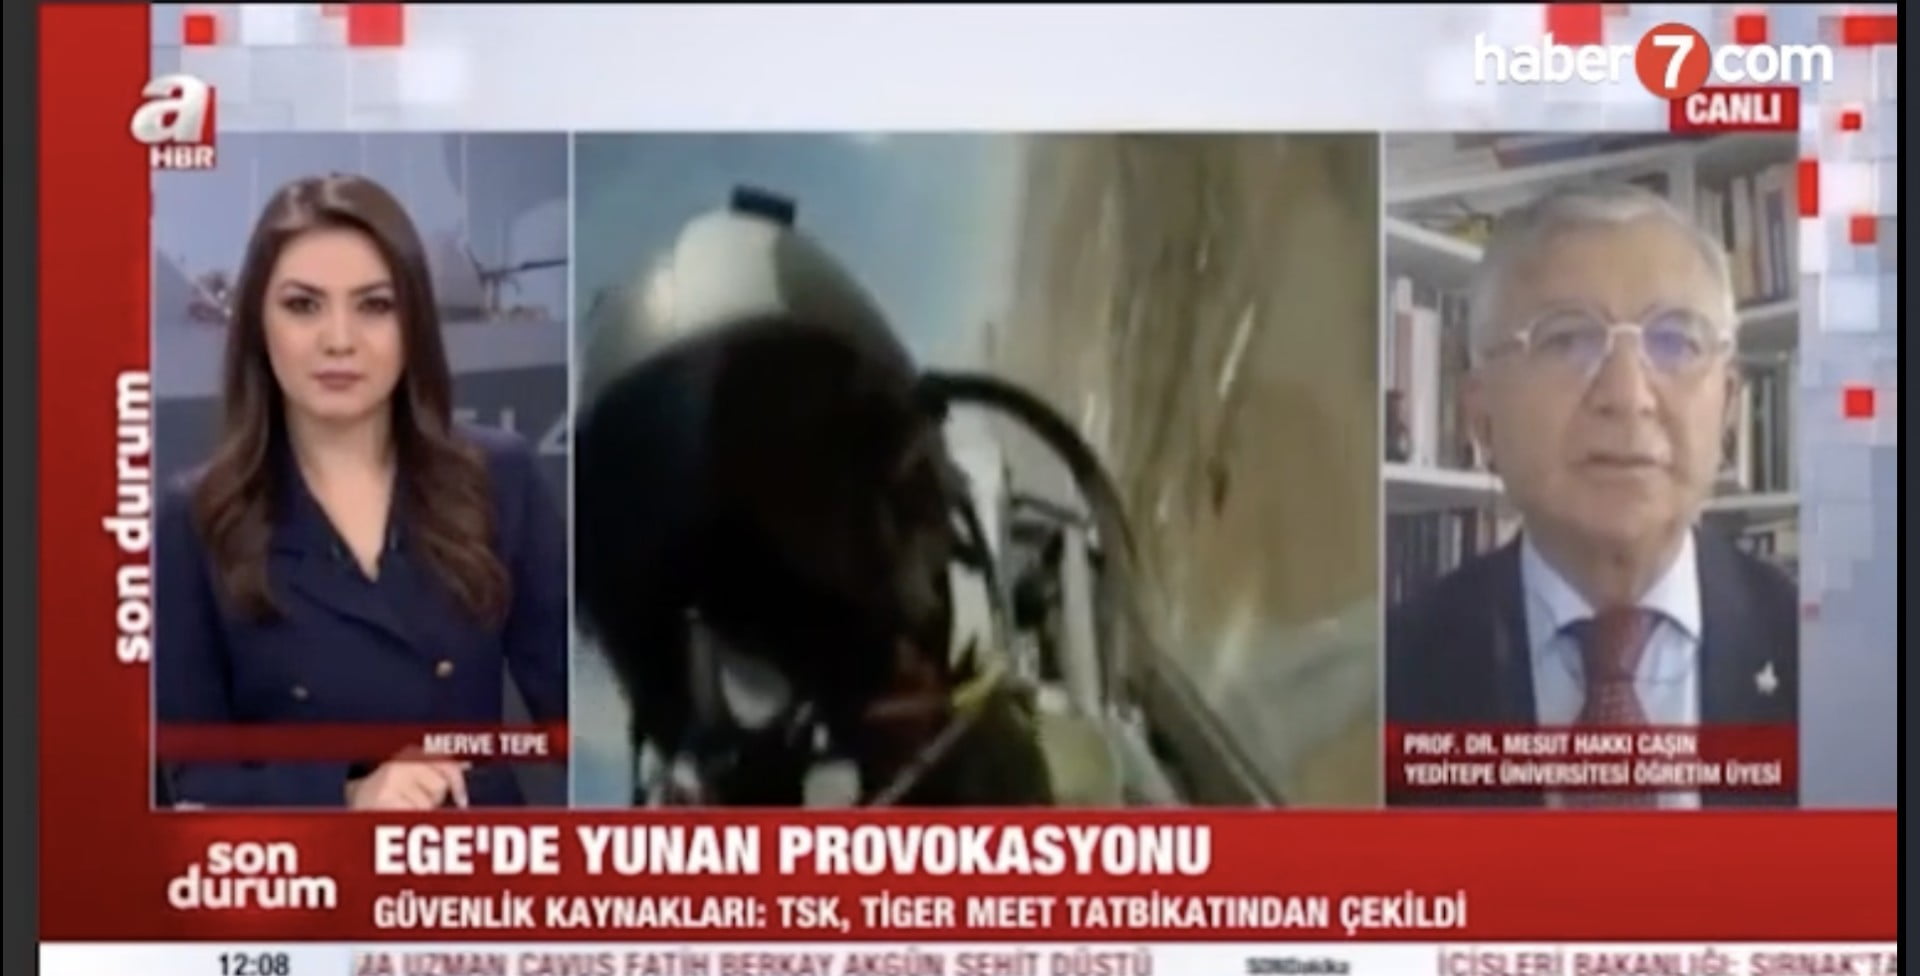 Παραλήρημα από σύμβουλο του Ερντογάν: ”Εάν ελληνικός πύραυλος χτυπήσει μαχητικό μας, εμείς θα κάψουμε την Ελλάδα”